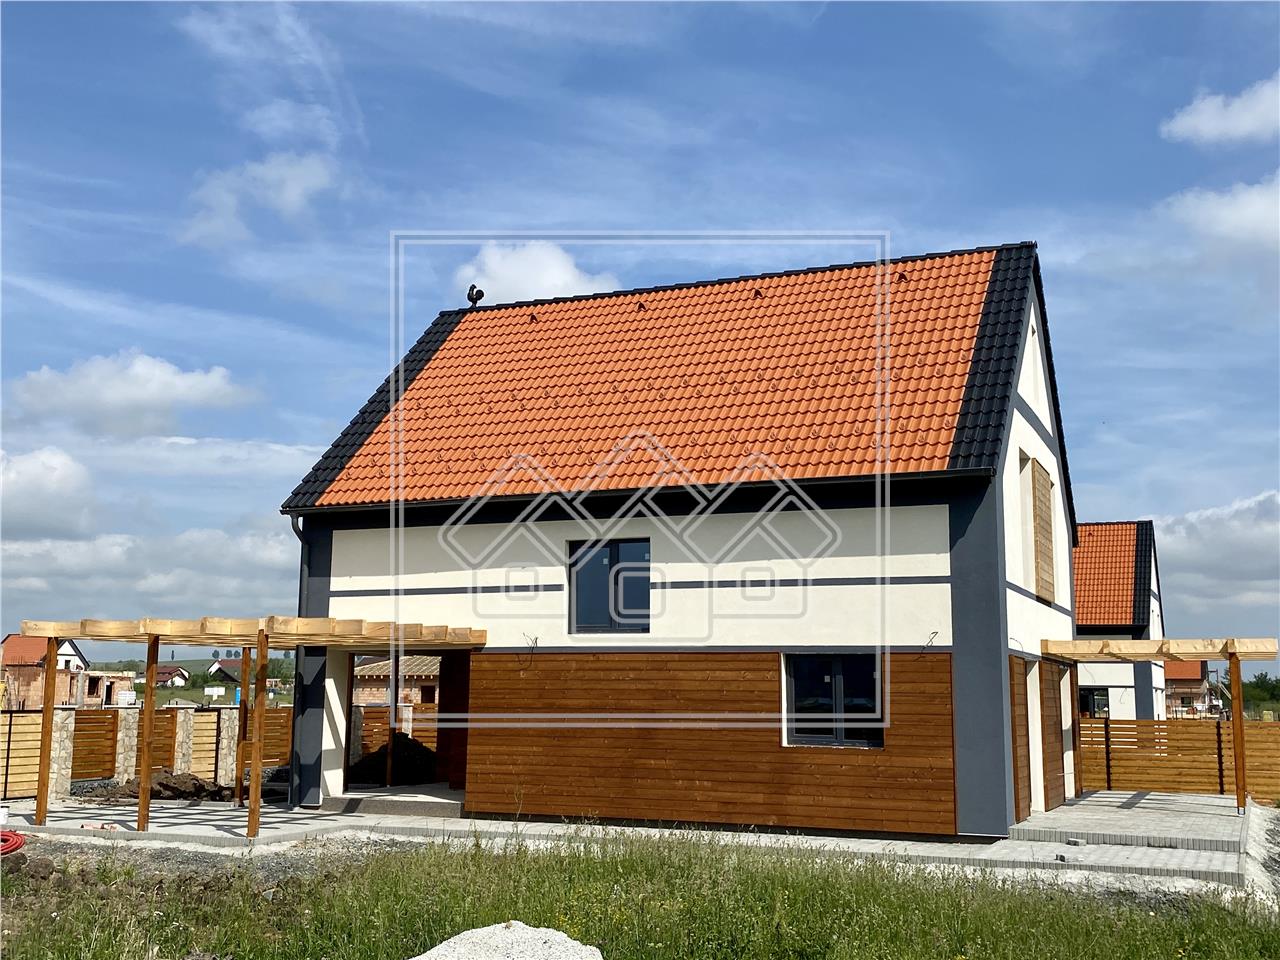 Casa de vanzare in Sibiu - Talmaciu - finisaje exterioare premium